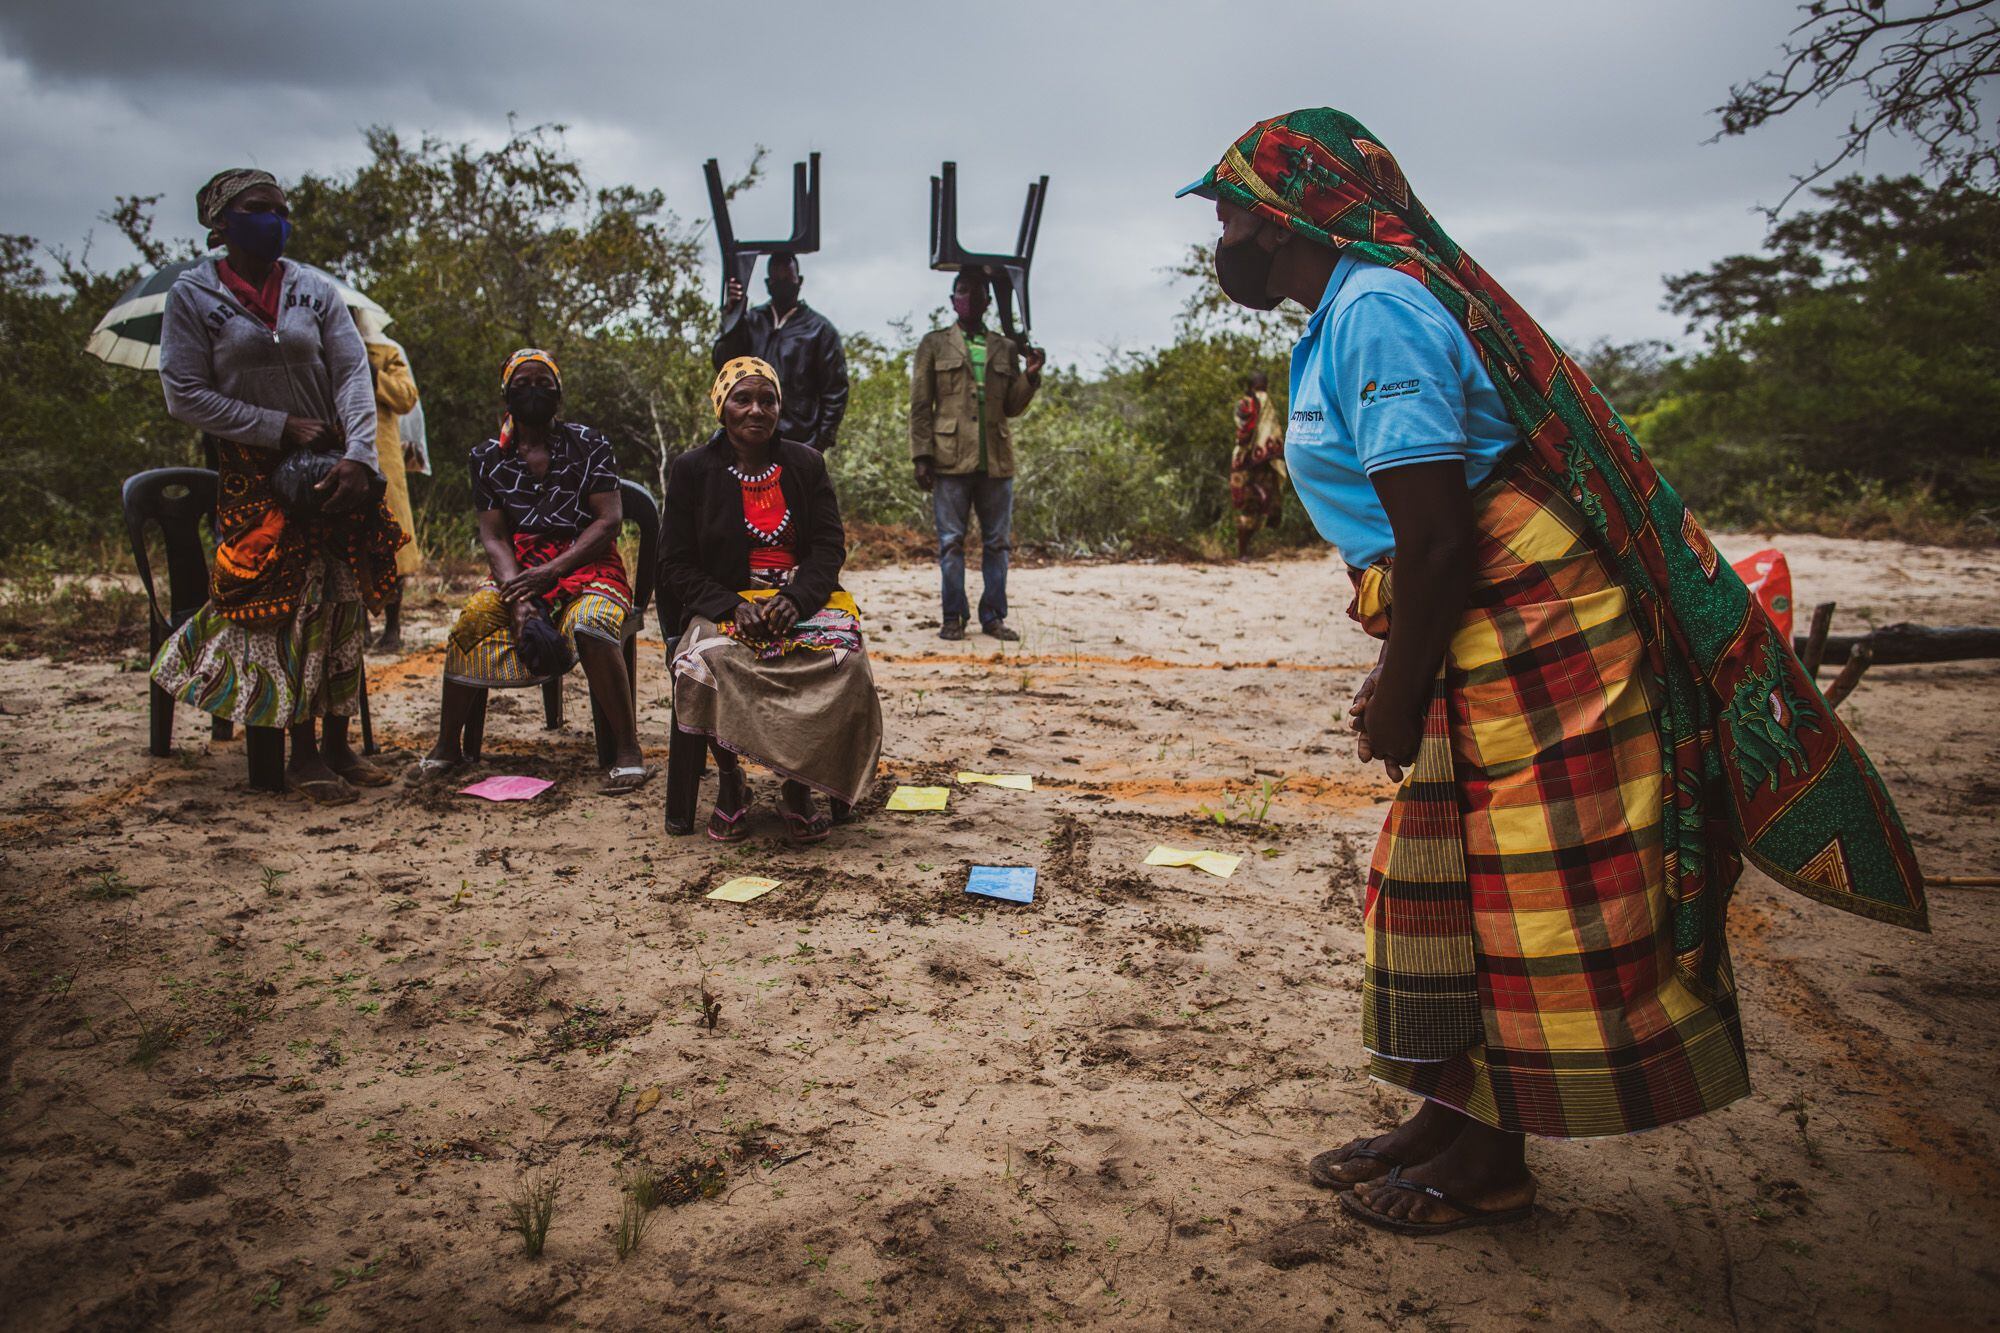 Un momento de la actividad llamada 'Despertar' organizada por la ONG Ongawa con los vecinos de Calanga, Manhiça, en el sur de Mozambique. Sirve para explicar la importancia de tener agua y saneamiento adecuados para prevenir enfermedades de transmisión hídrica. Pincha en la imagen para ver la fotogalería completa.